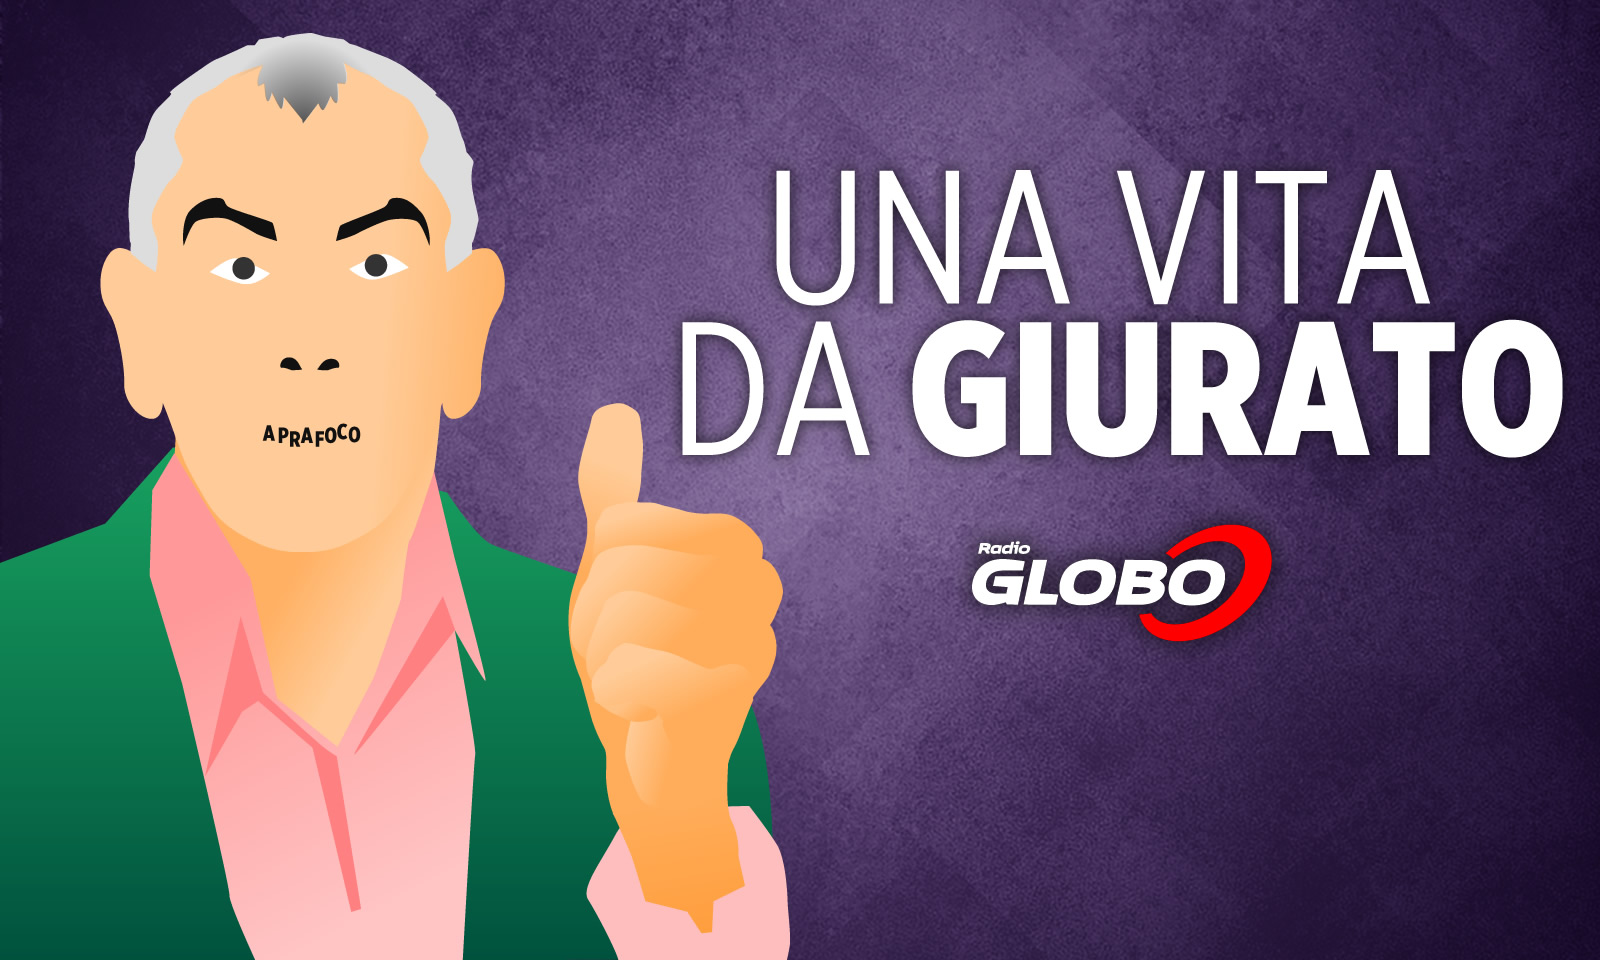 Una Vita da Giurato - Radio Globo